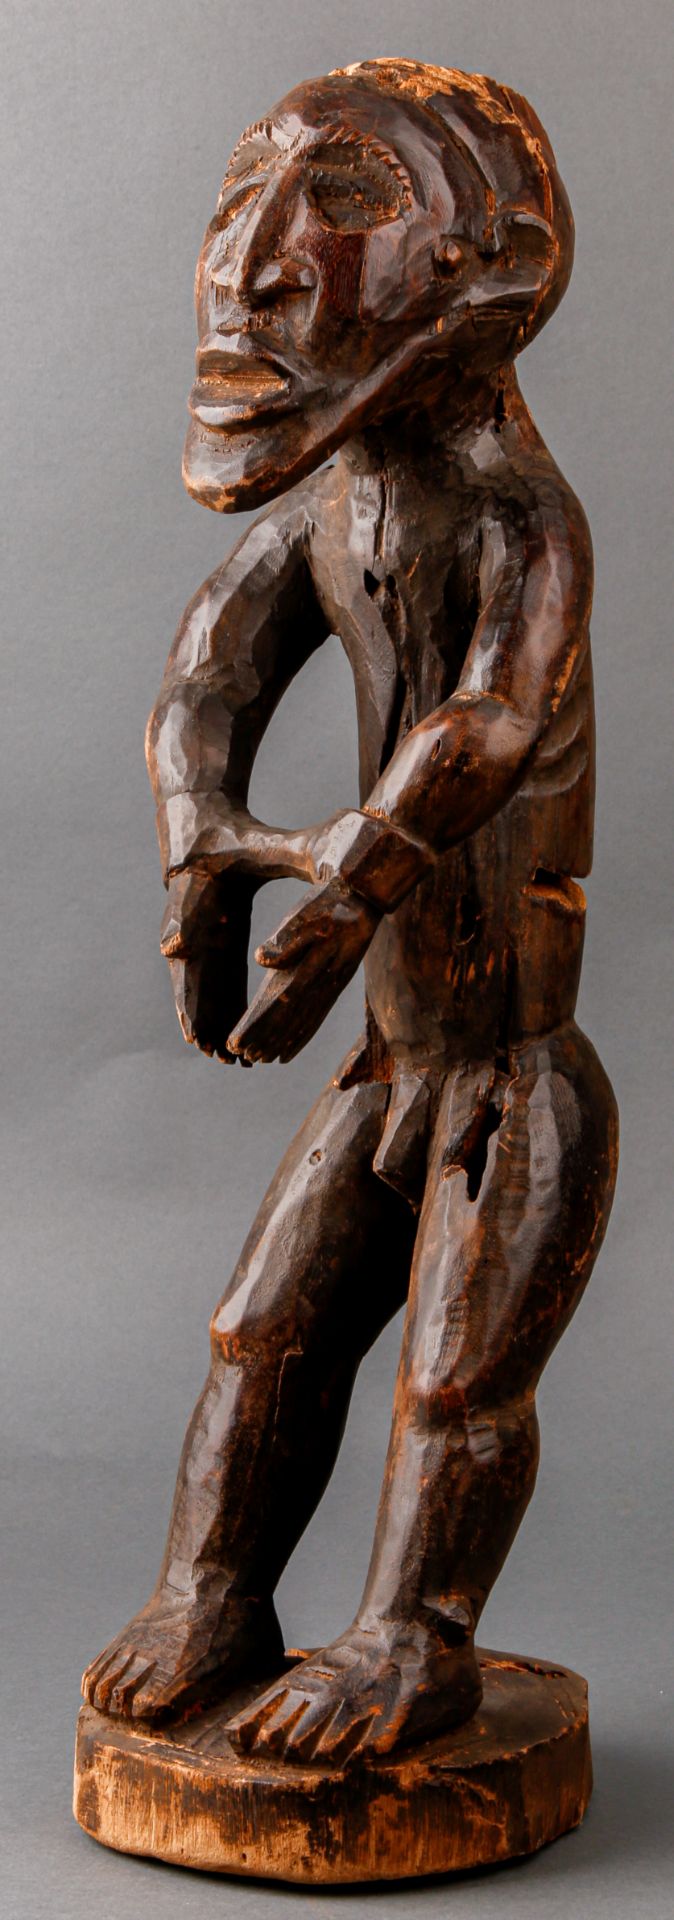 Stehende männliche Figur in Handschellen, 20. Jh., Kameruner Grasland (wohl Bamileke) - Image 2 of 2